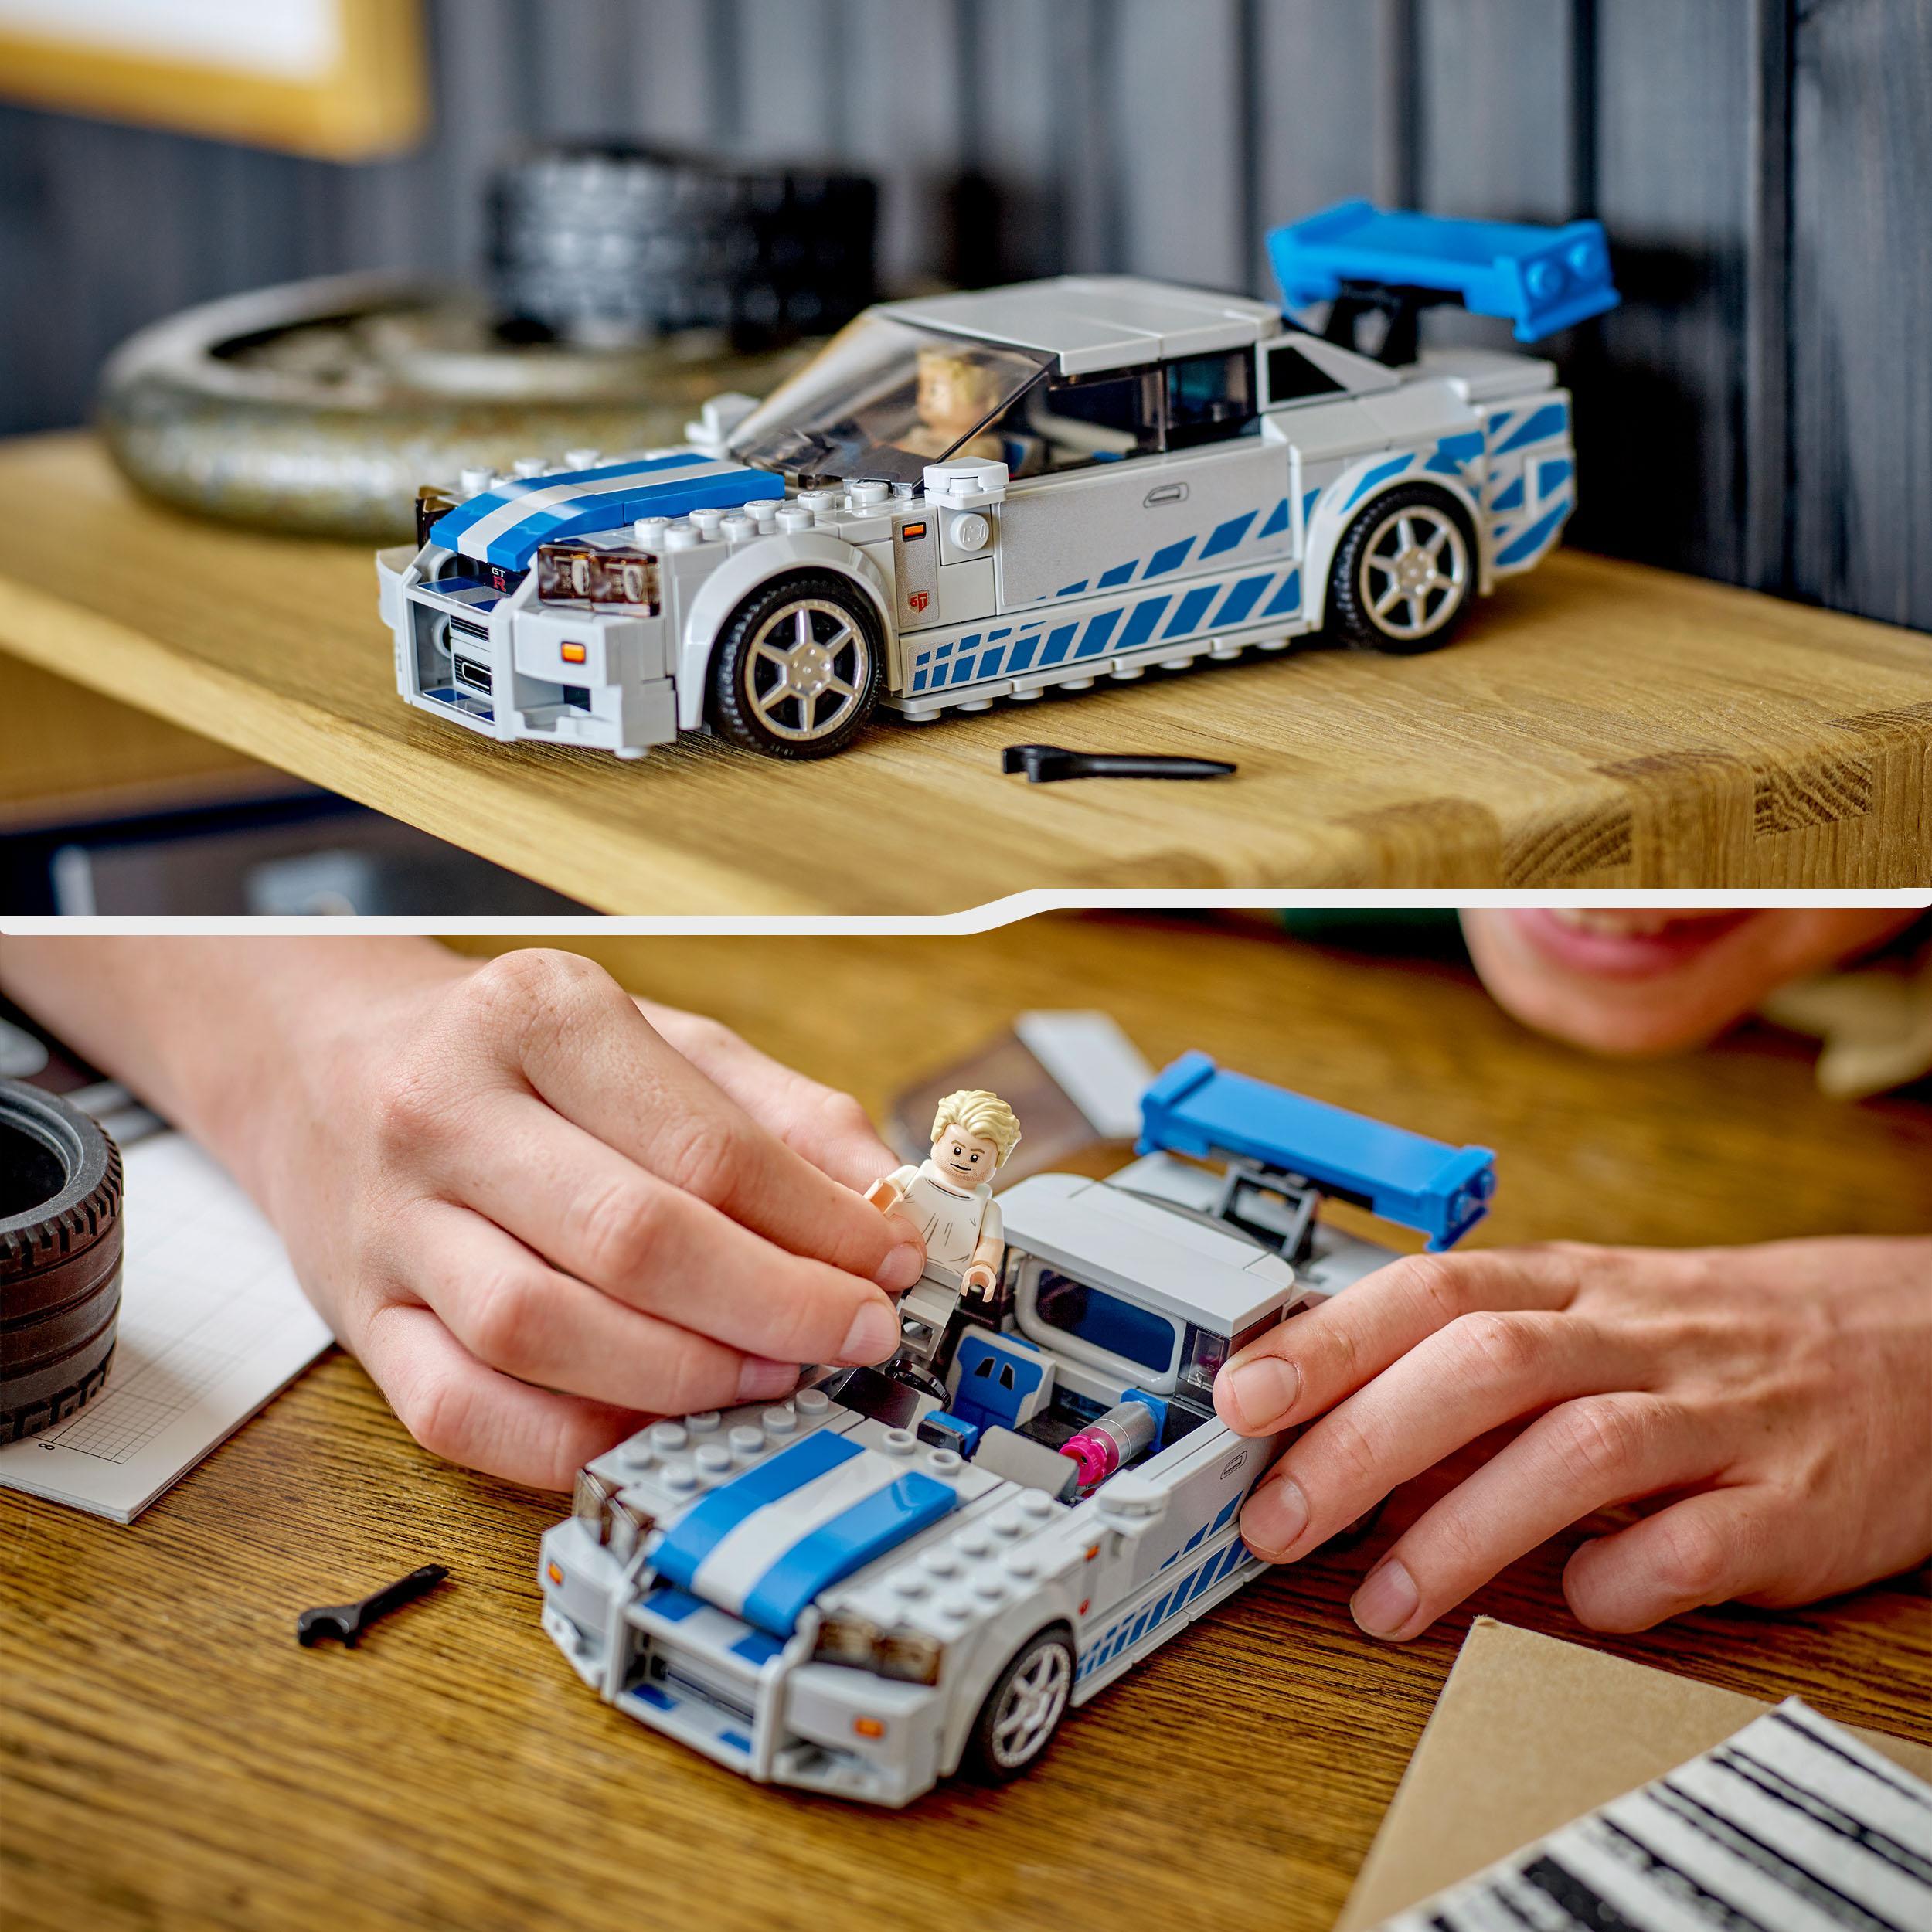 LEGO Speed Champions 76917 2 Fast 2 Furious Nissan Skyline GT-R (R34) - LEGO